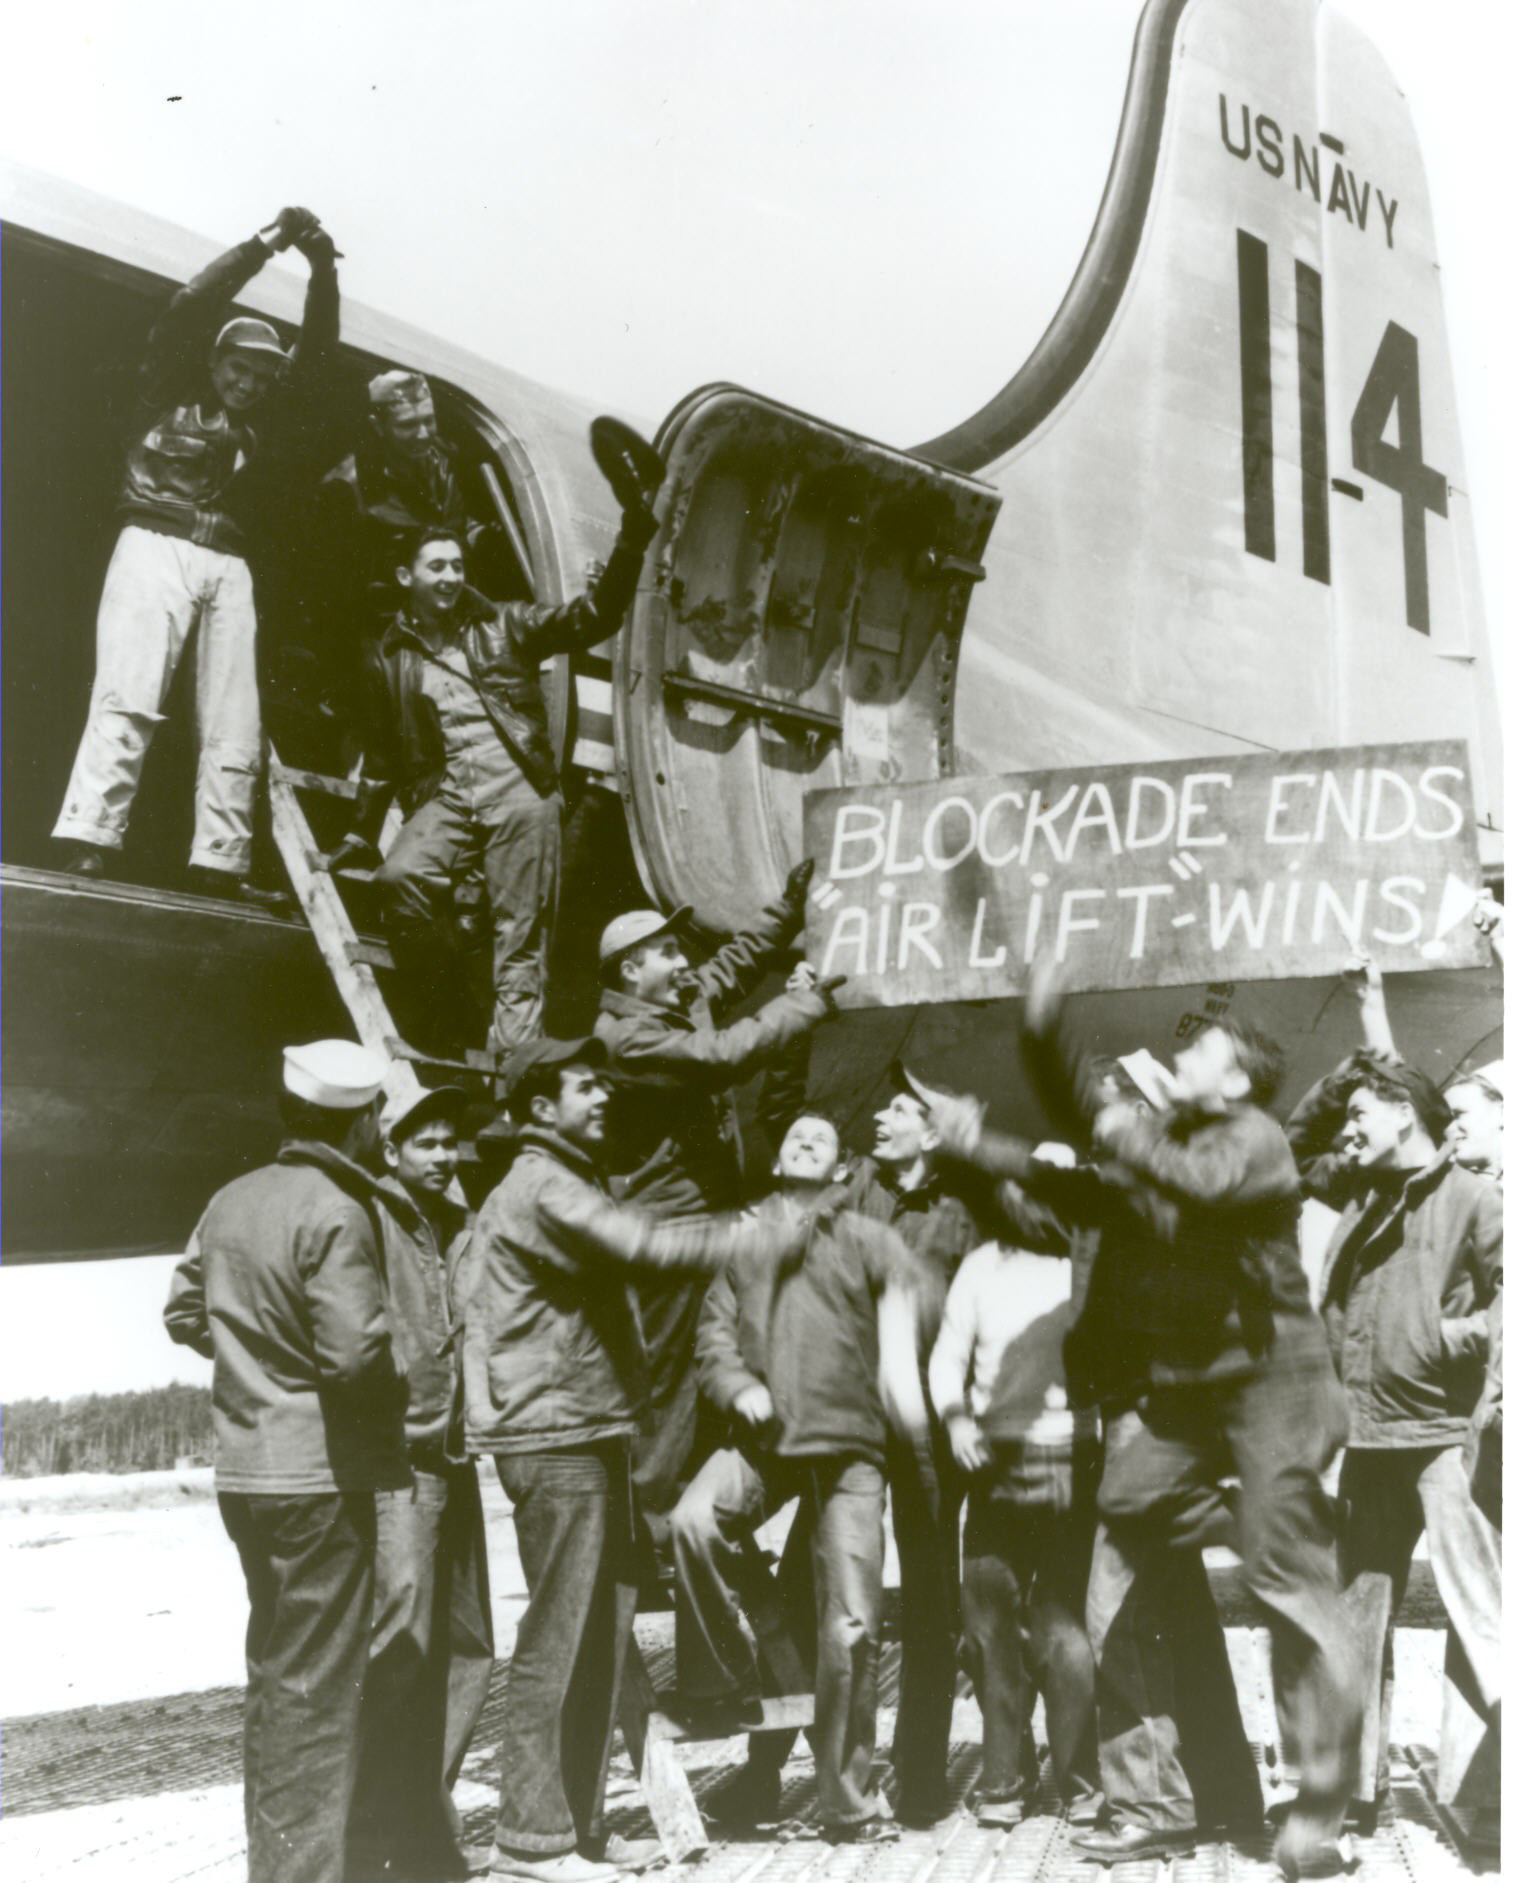 Un grupo de hombres señala un letrero en el exterior de un avión que dice “Blockade Ends Air Lift Wins” (Termina el bloqueo, el apoyo aéreo gana).